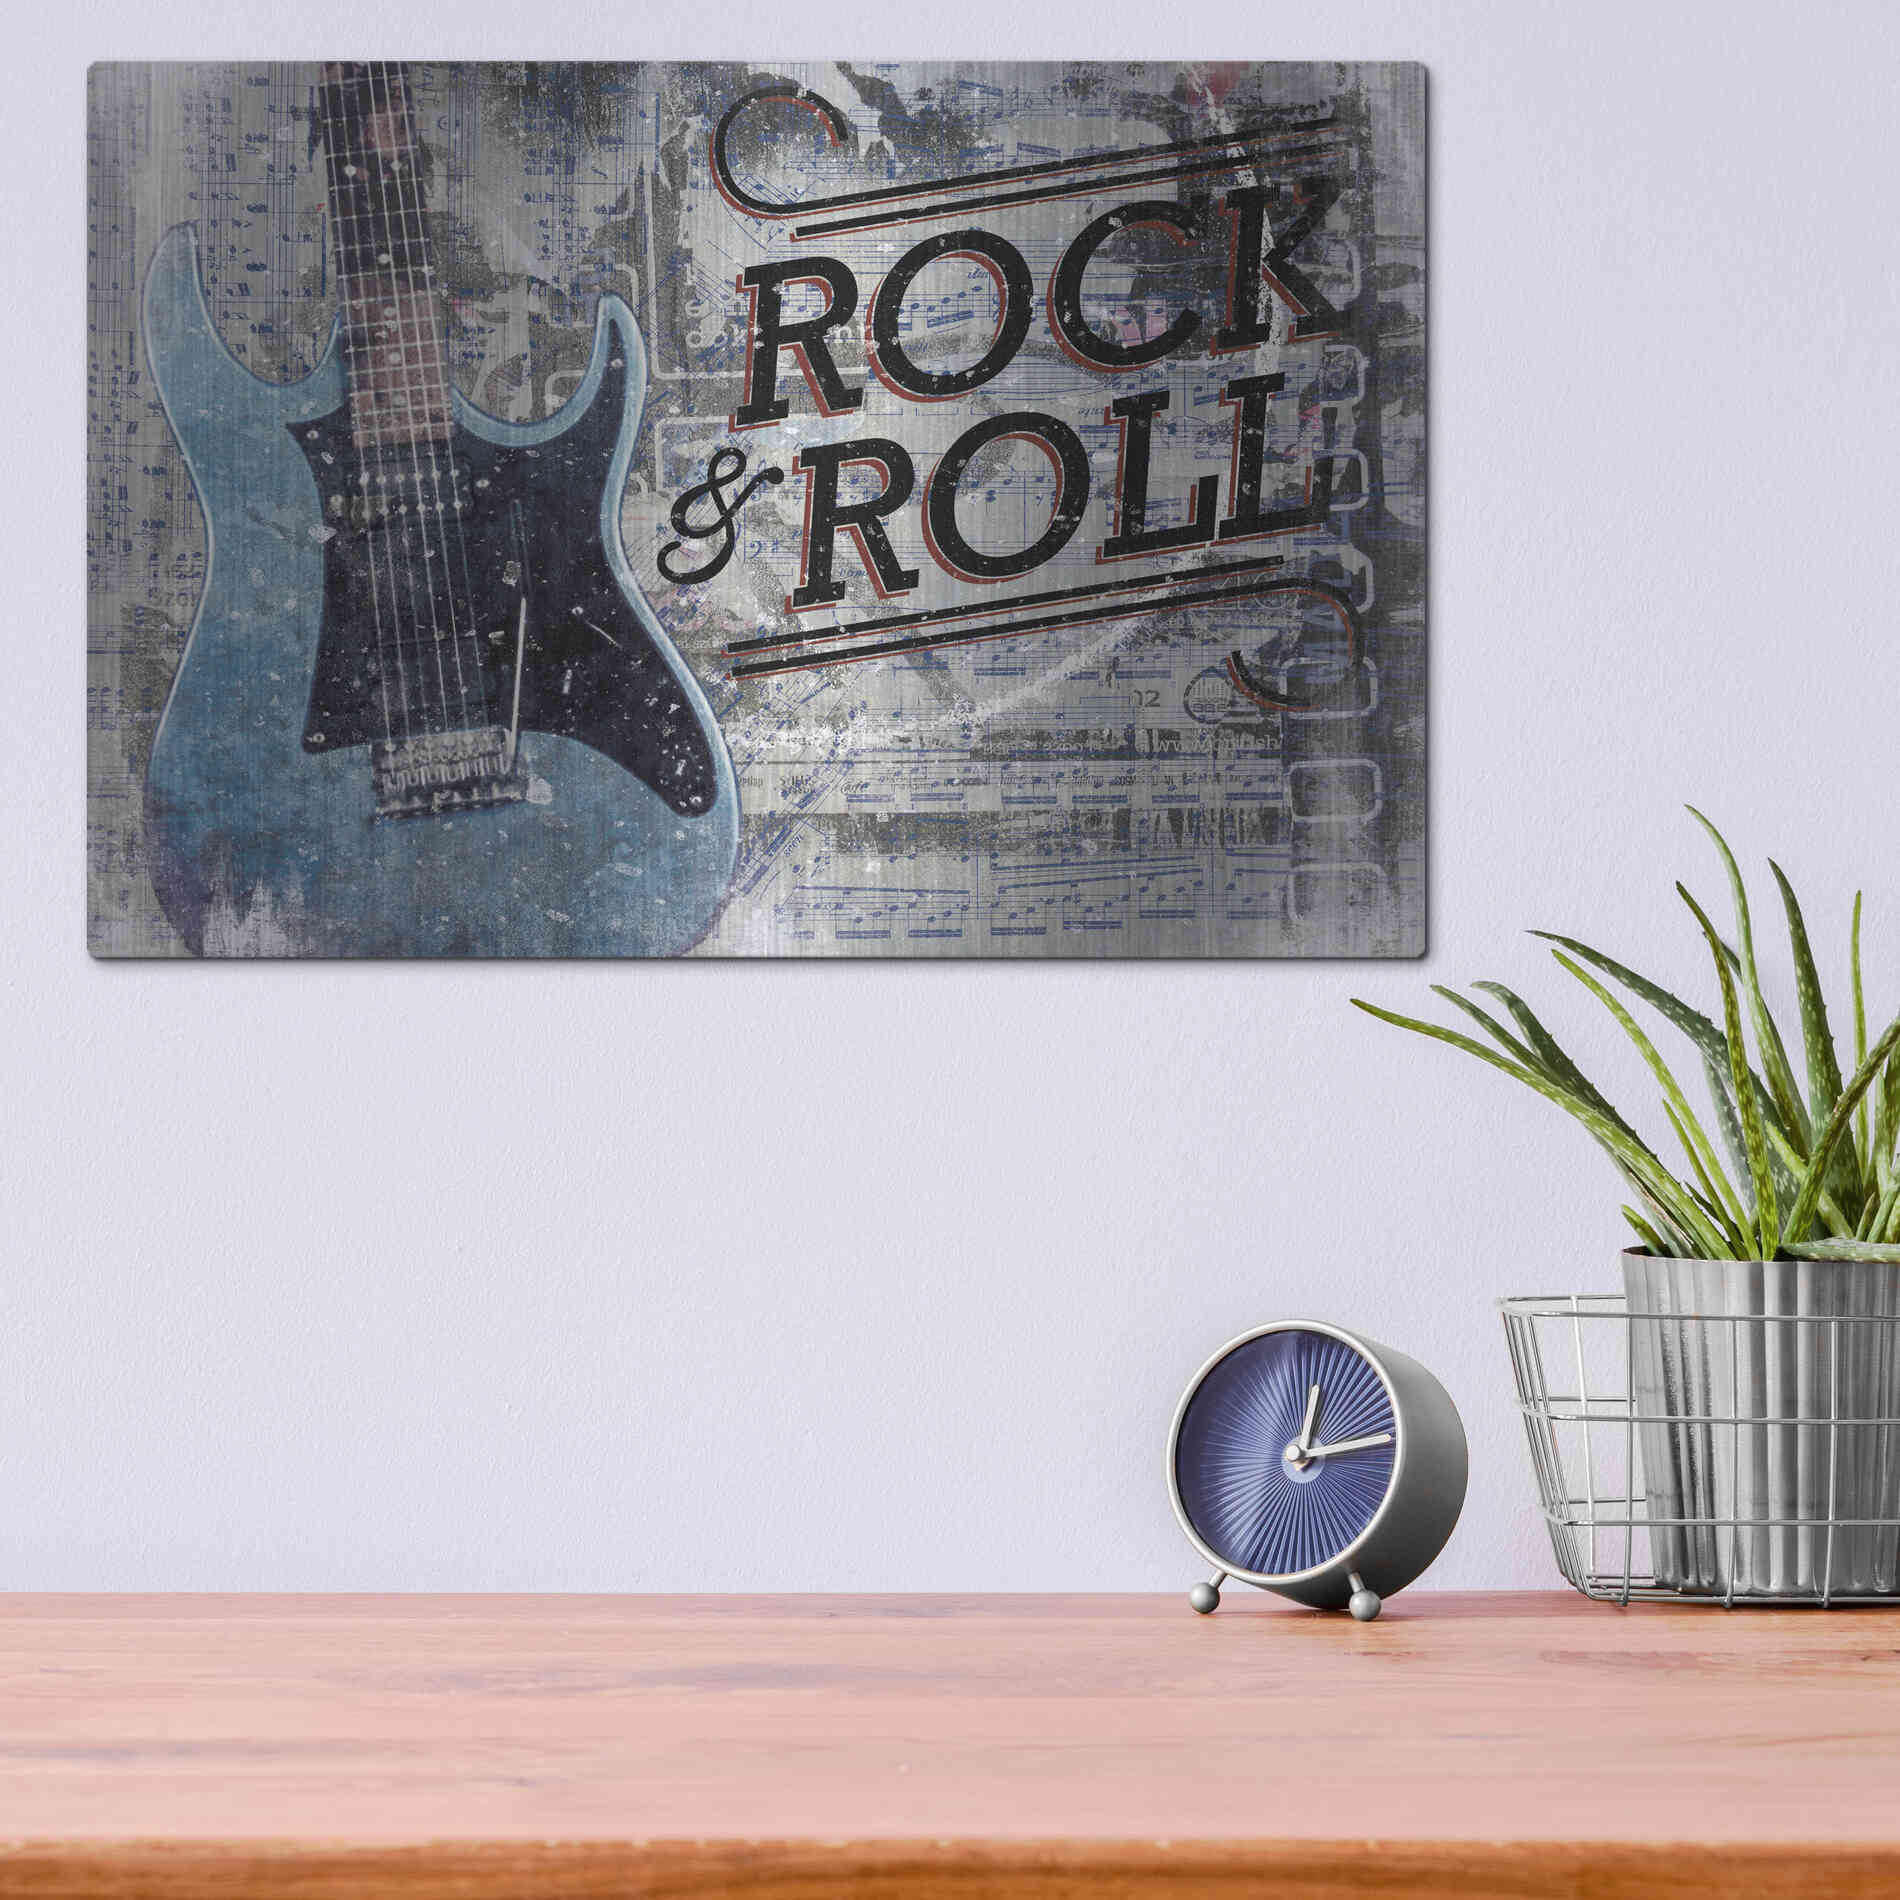 Luxe Metal Art 'Rock & Roll Guitar' by Cloverfield & Co, Metal Wall Art,16x12